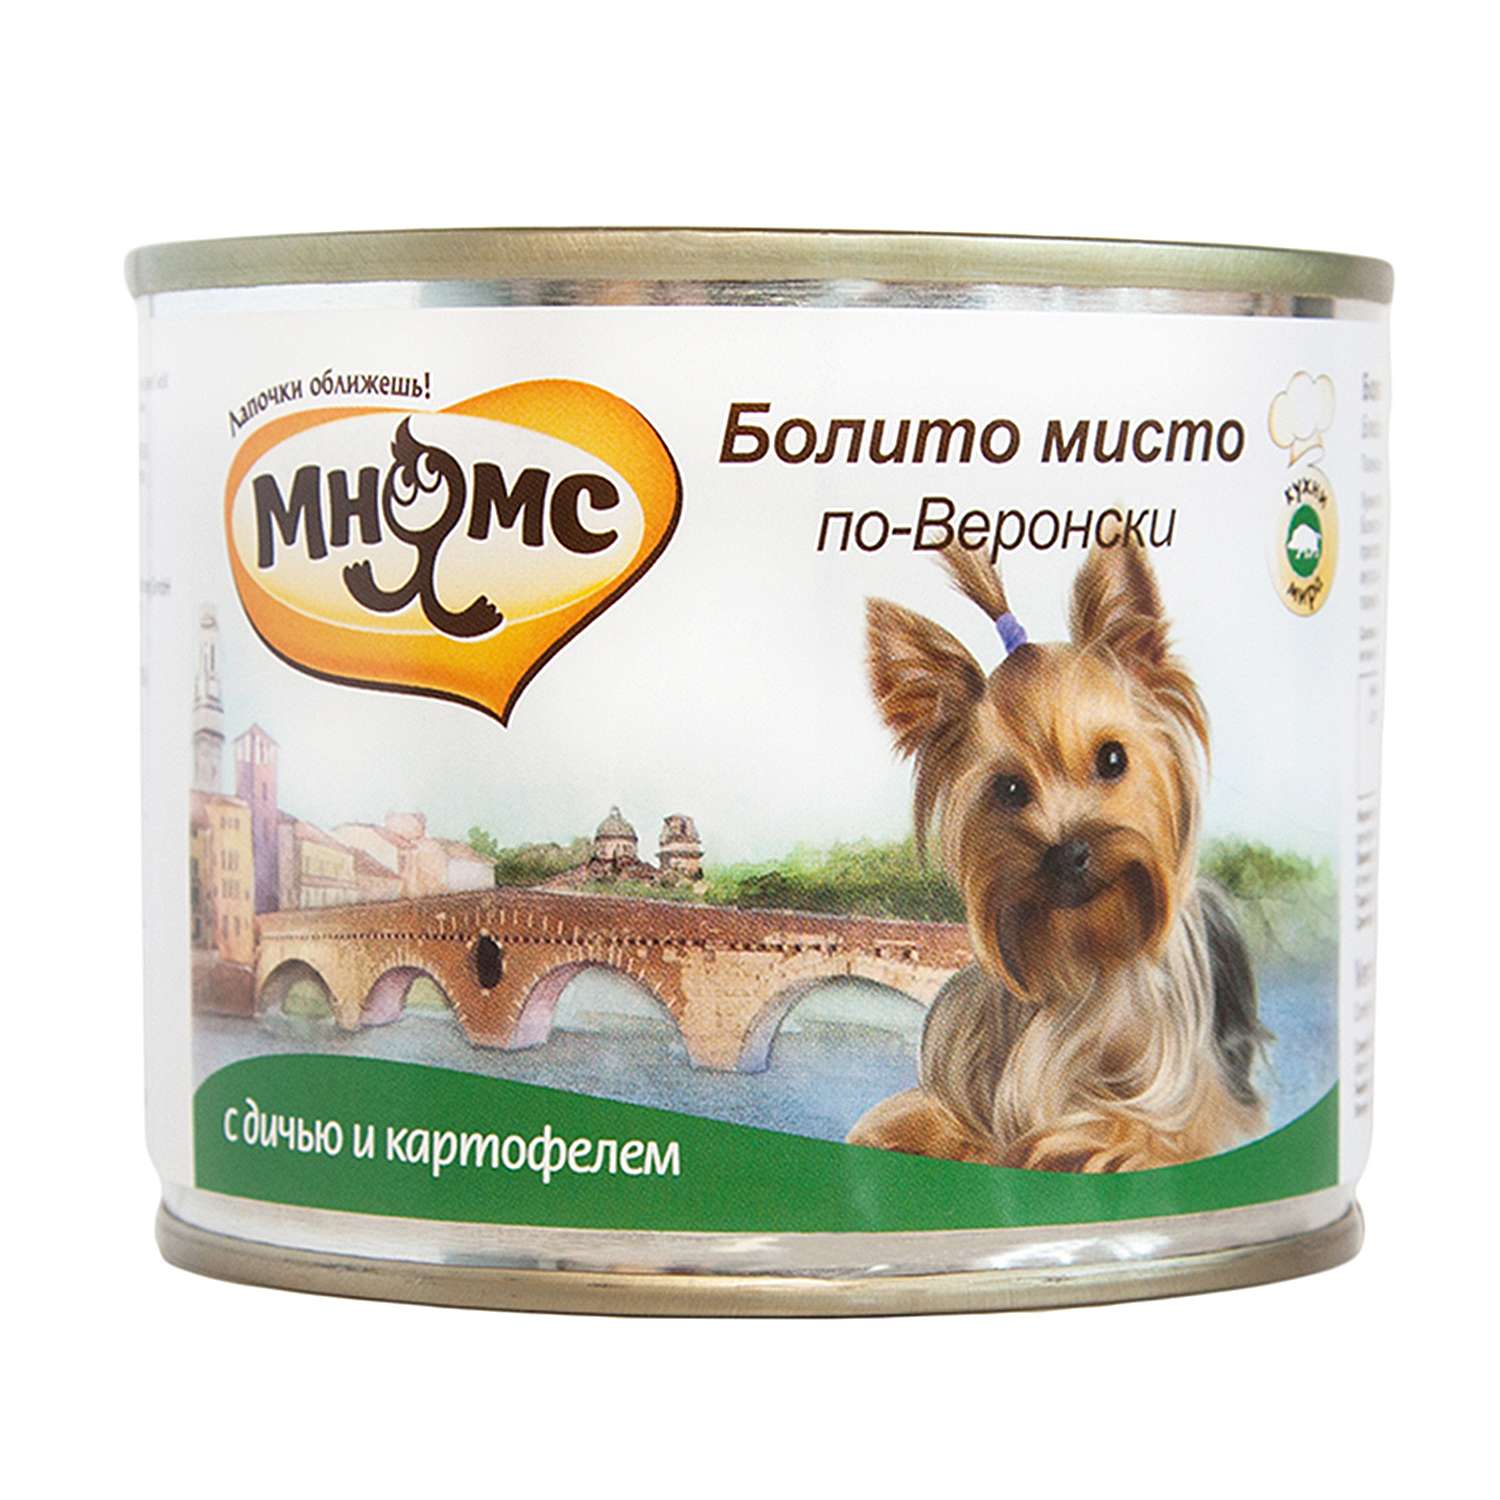 Корм для собак Мнямс Болито мисто по-Веронски дичь с картофелем консервы 200г - фото 1